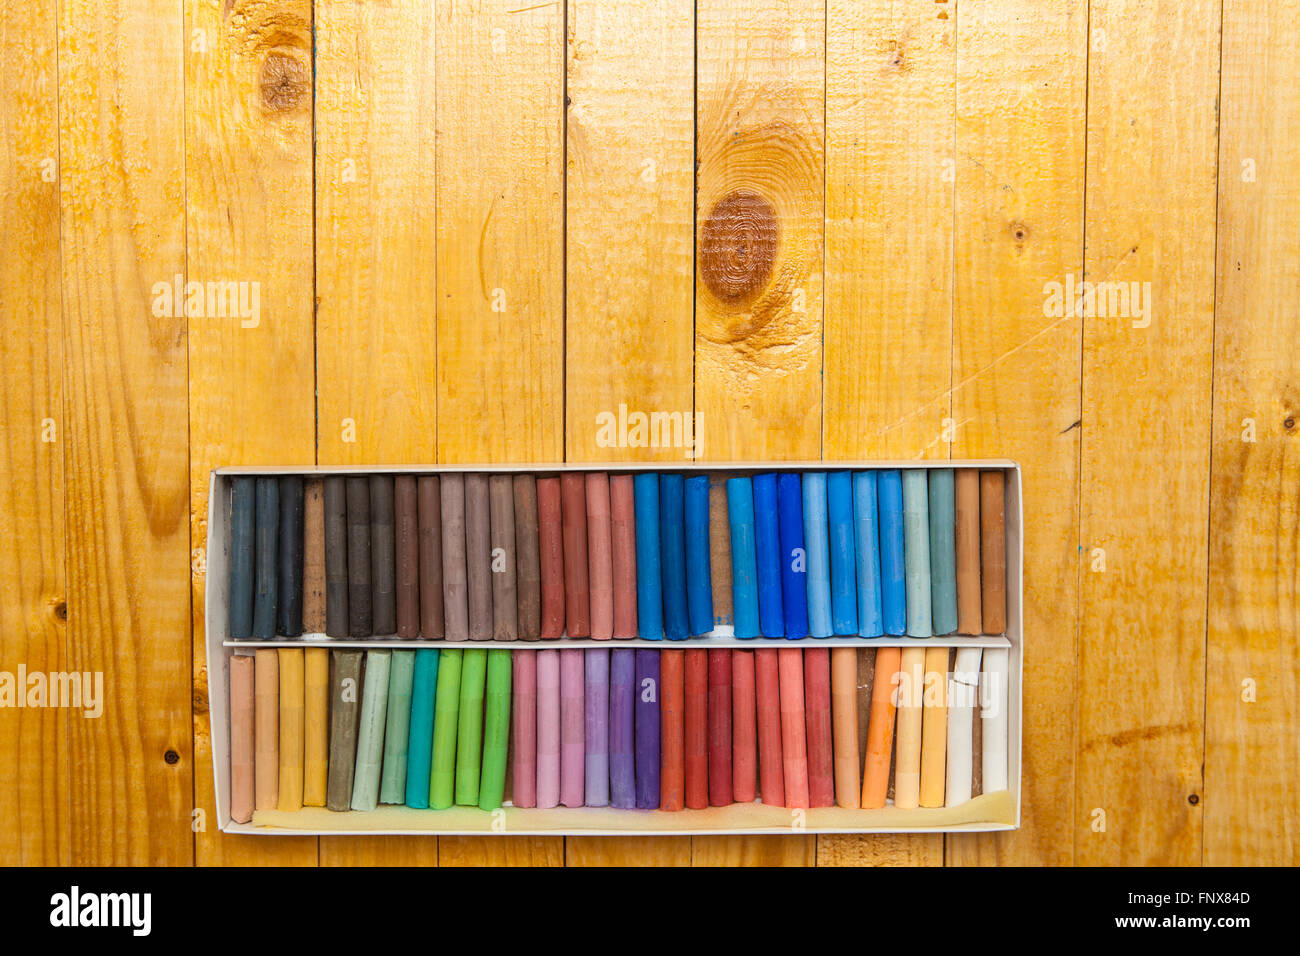 Pastelli colorati in una casella su un sfondo di legno Foto Stock